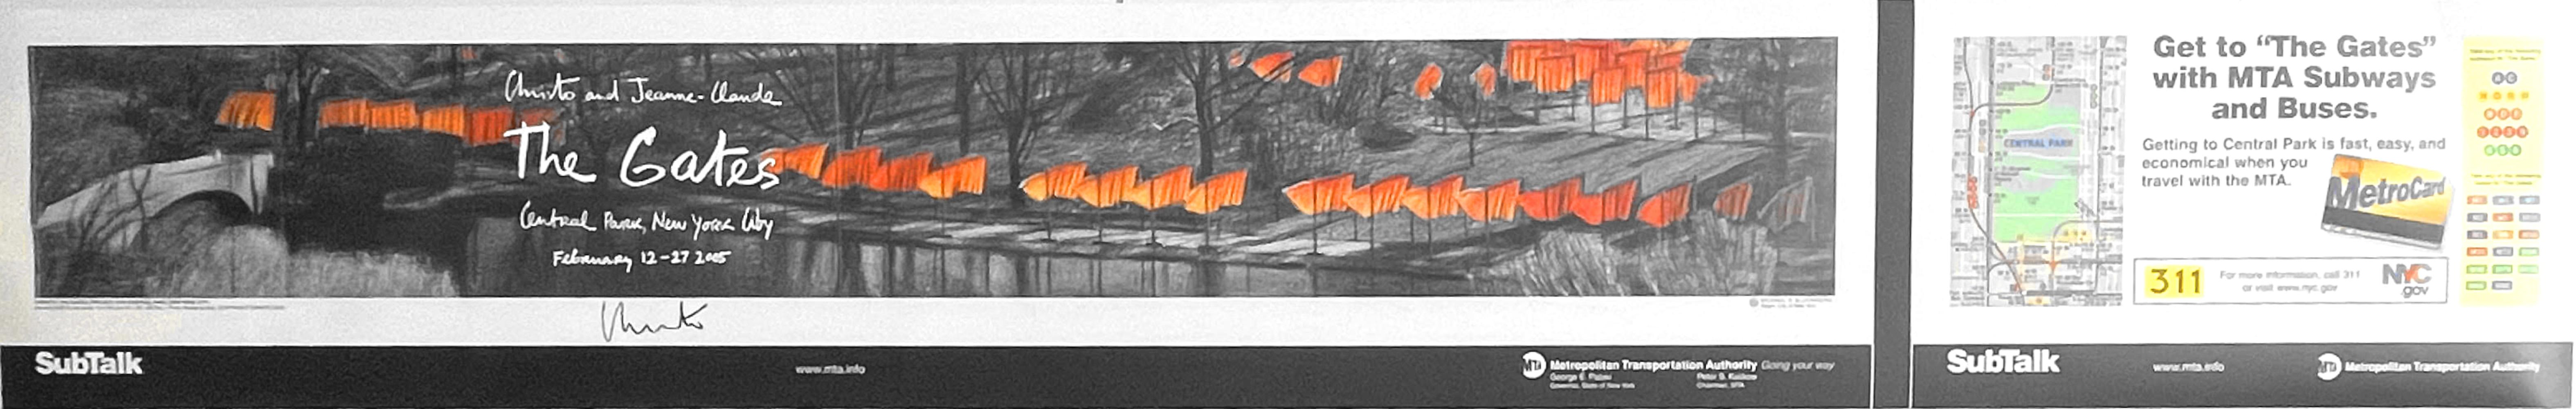 Christo
The Gates, Historisches New York City Subway Banner Poster (handsigniert von Christo), 2005
Offsetlithografie-Poster (auf der Vorderseite von Christo handsigniert)
Handsigniert von Christo auf der Vorderseite
11 × 69 1/2 Zoll
Ungerahmt
Nur